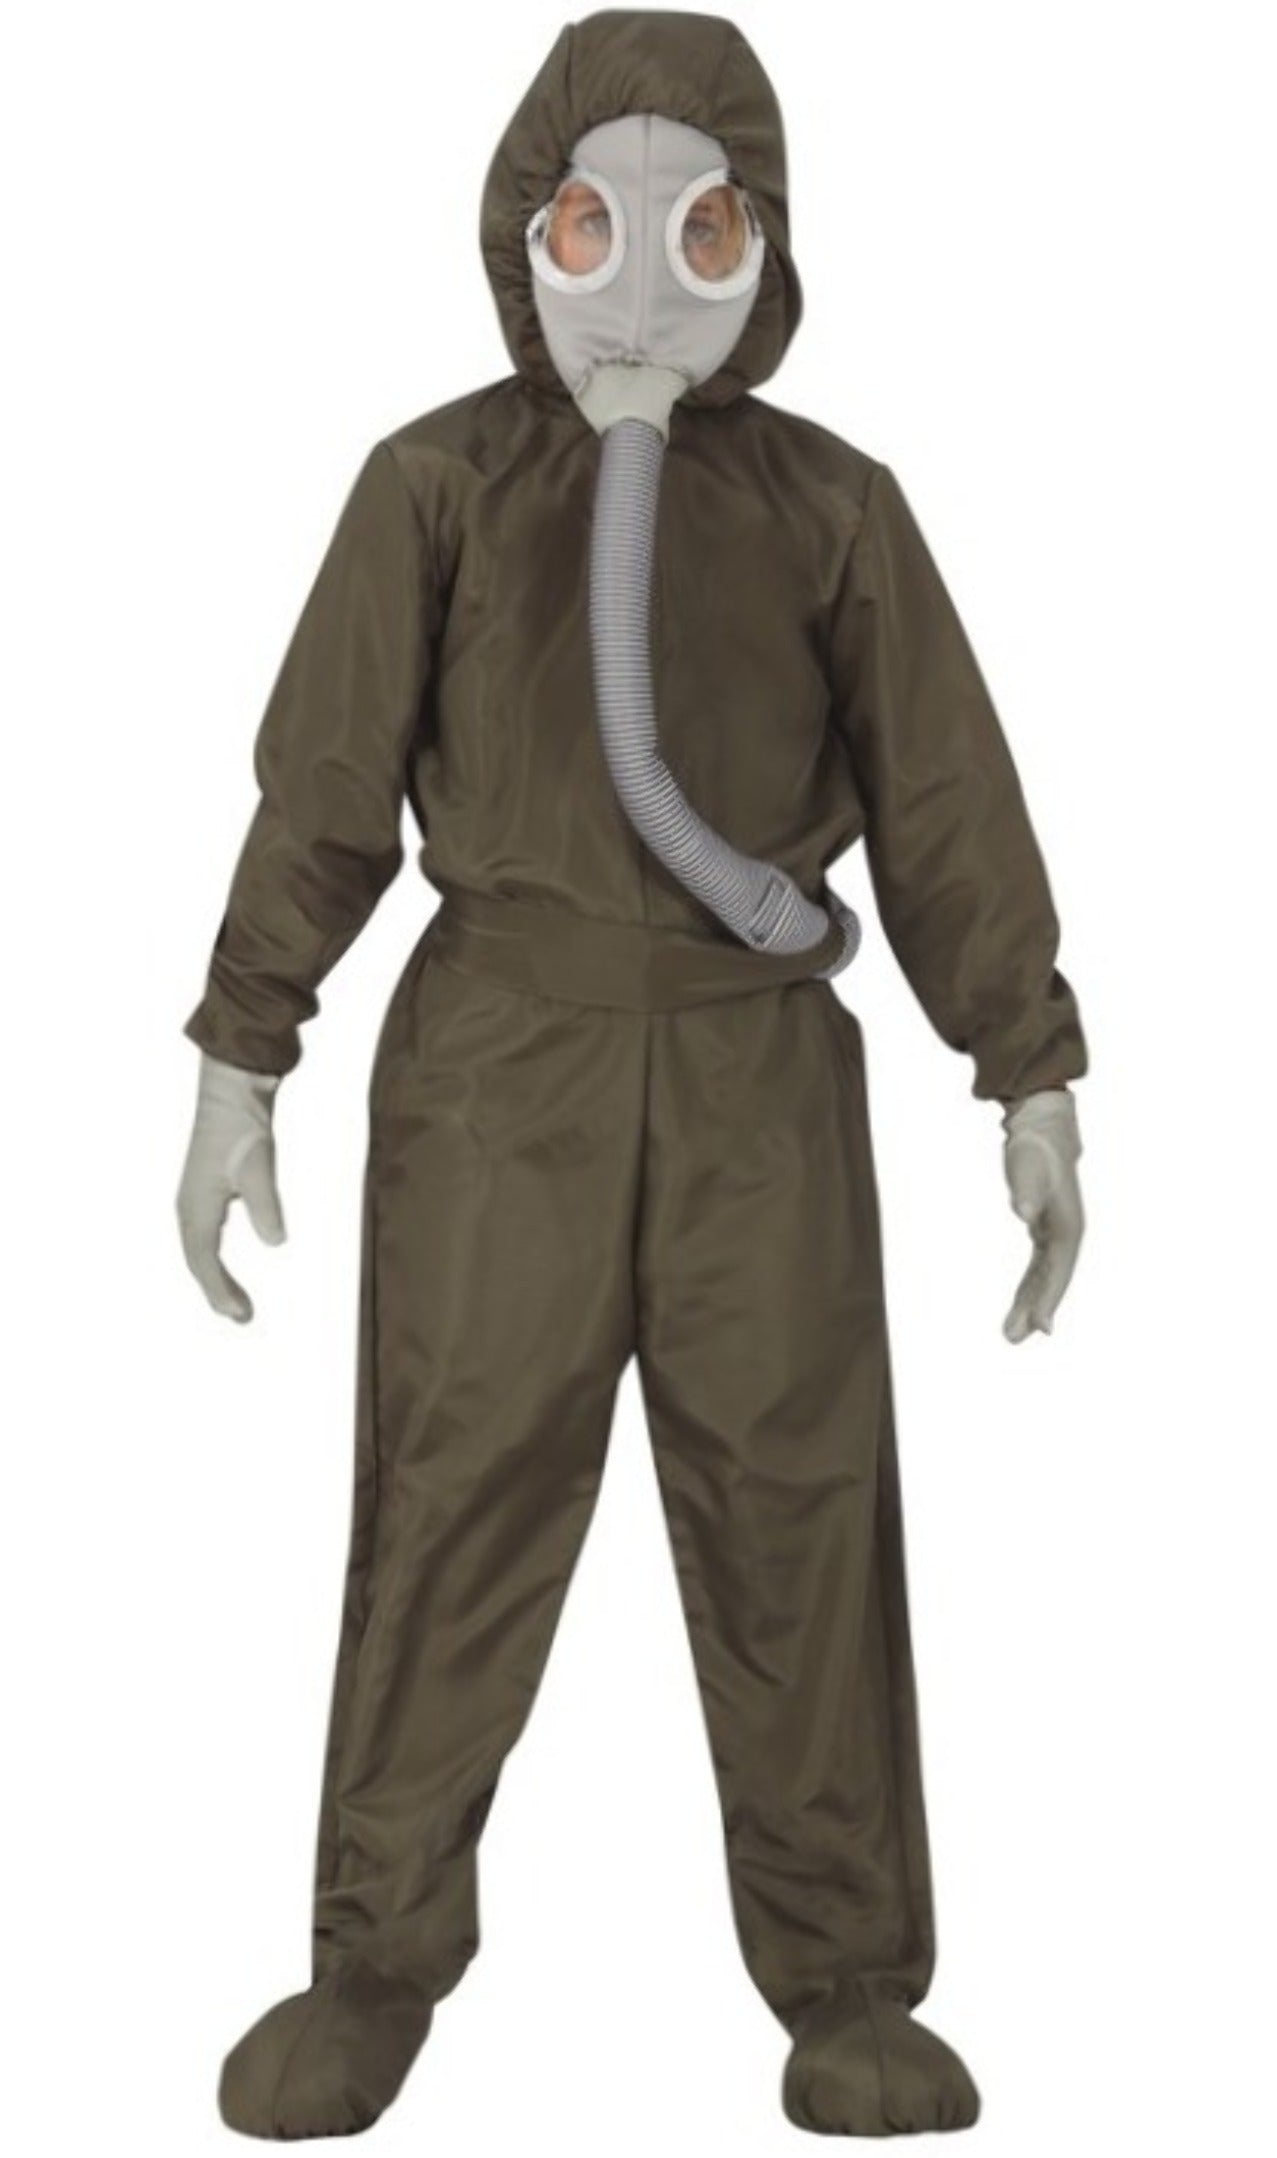 Children's Hazmat Suit Costume - The Costume Shoppe